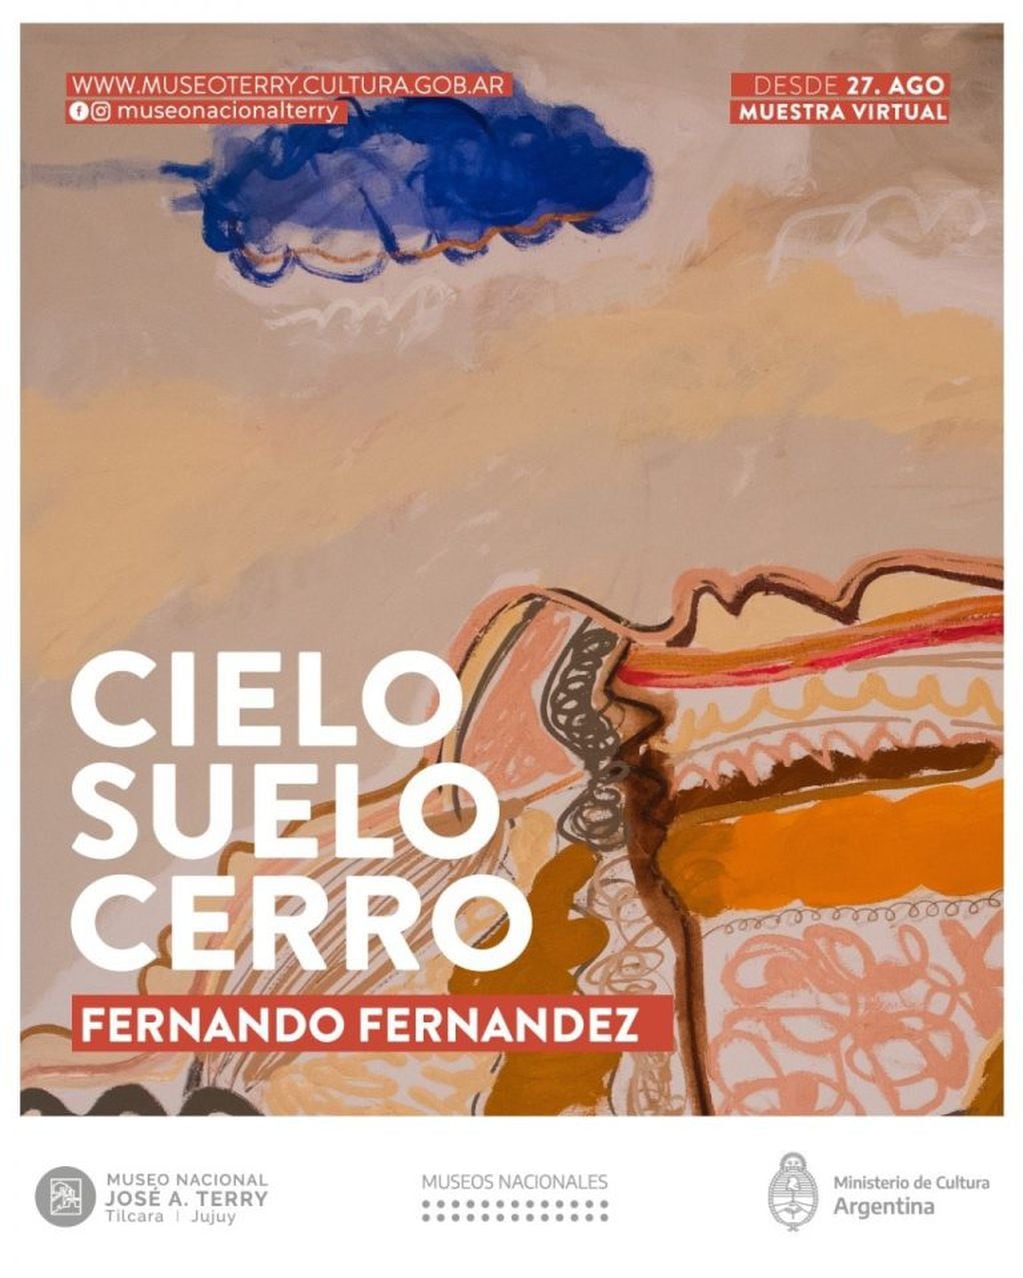 Flyer promocional de la exposición “Cielo Suelo Cerro”, de Fernando Fernández, ofrecida por el Museo Terry de Tilcara.